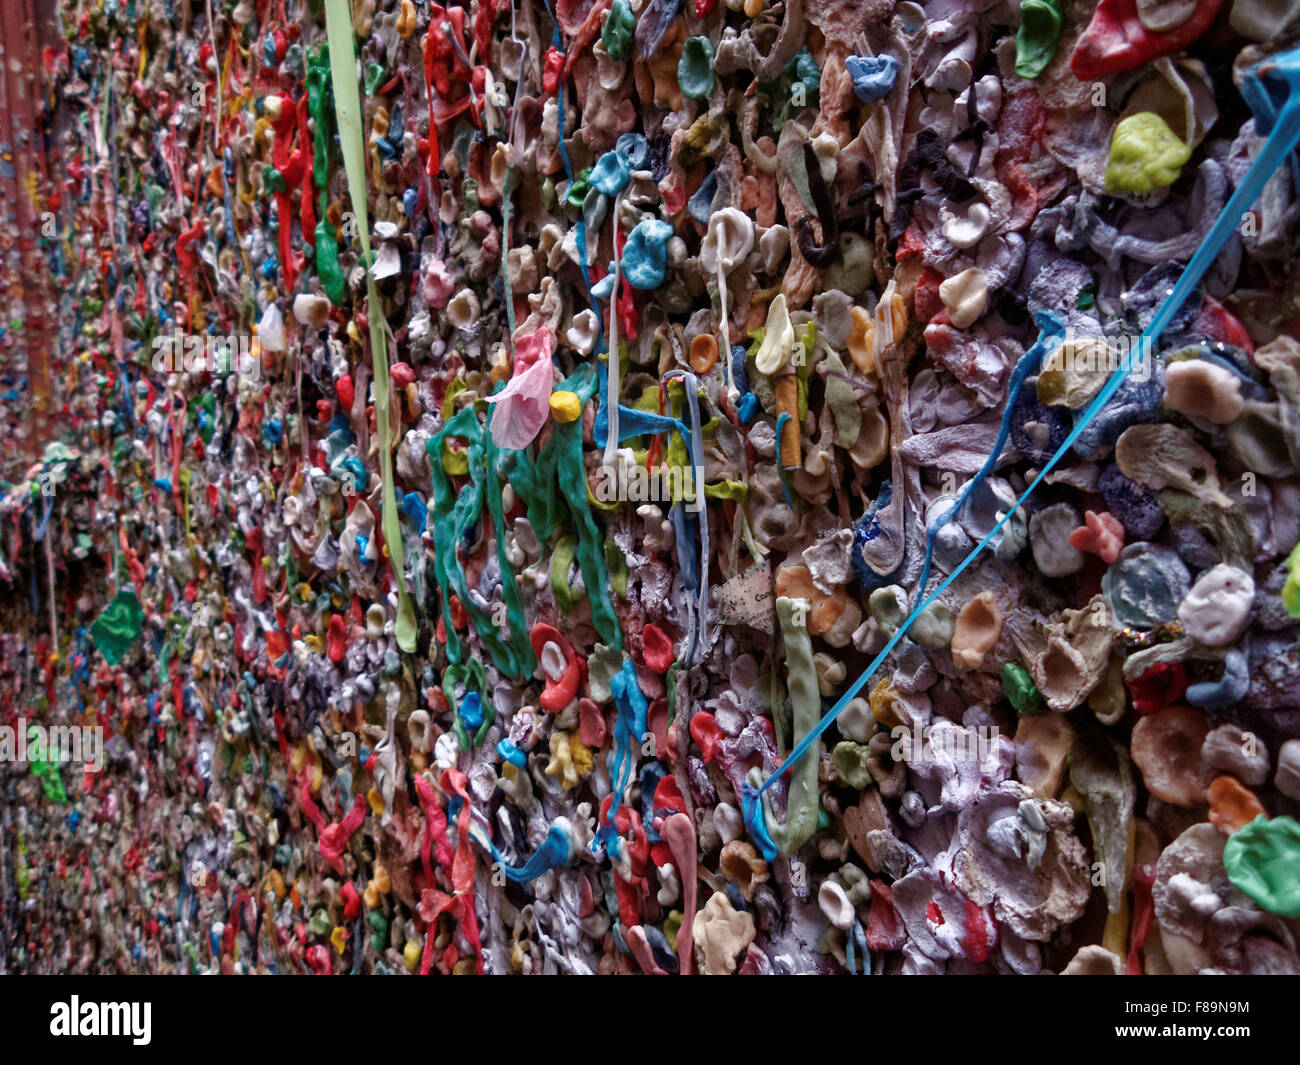 Le Pike Place Market Theatre Gum Wall à Seattle, Washington est couvert de chewing-gum utilisé. Banque D'Images